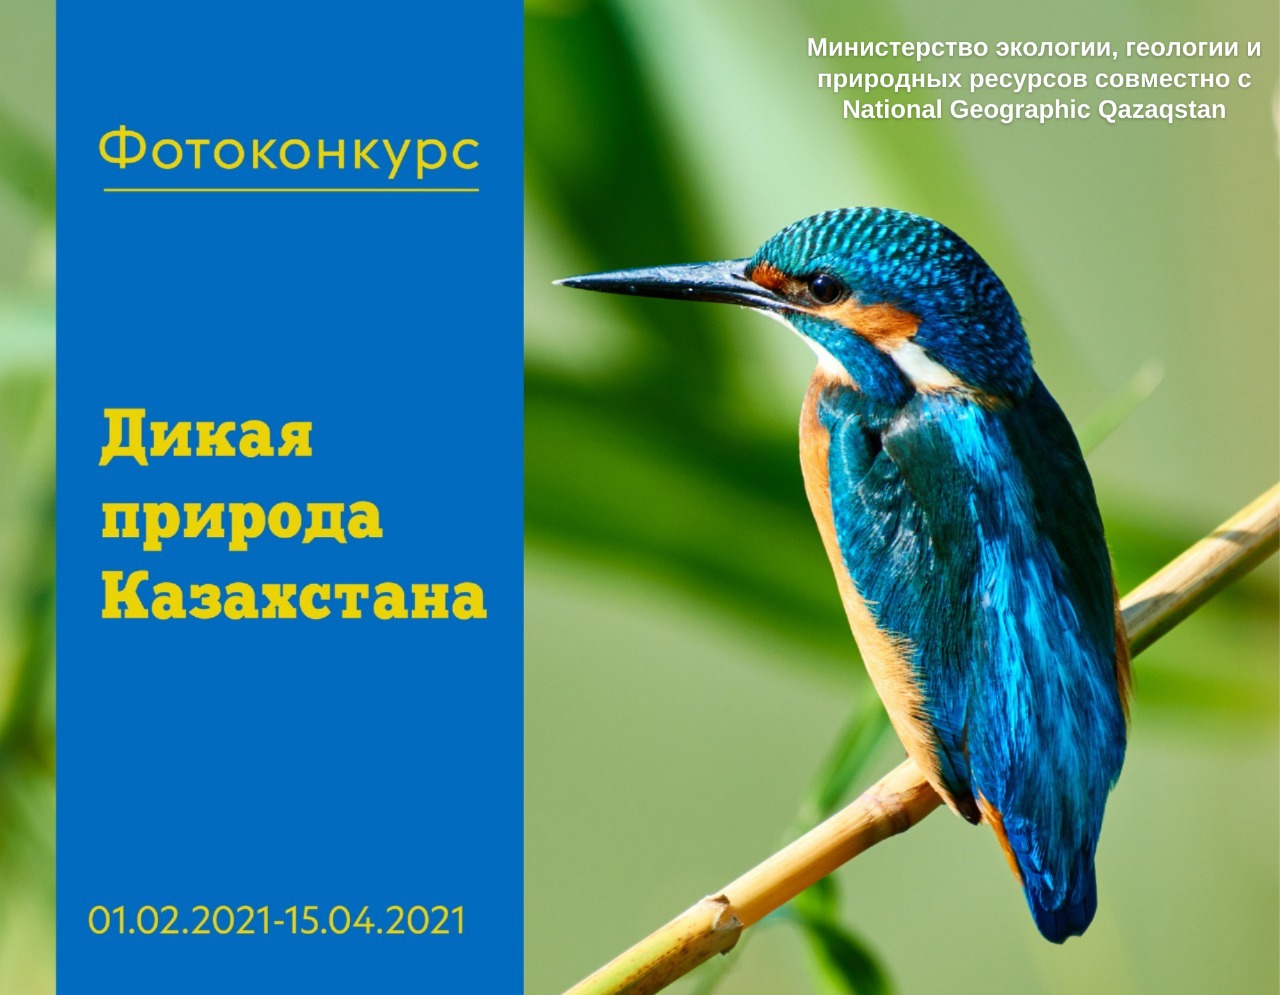 Минэкологии и National Geographic Qazaqstan запускают фотоконкурс «Дикая природа Казахстана»